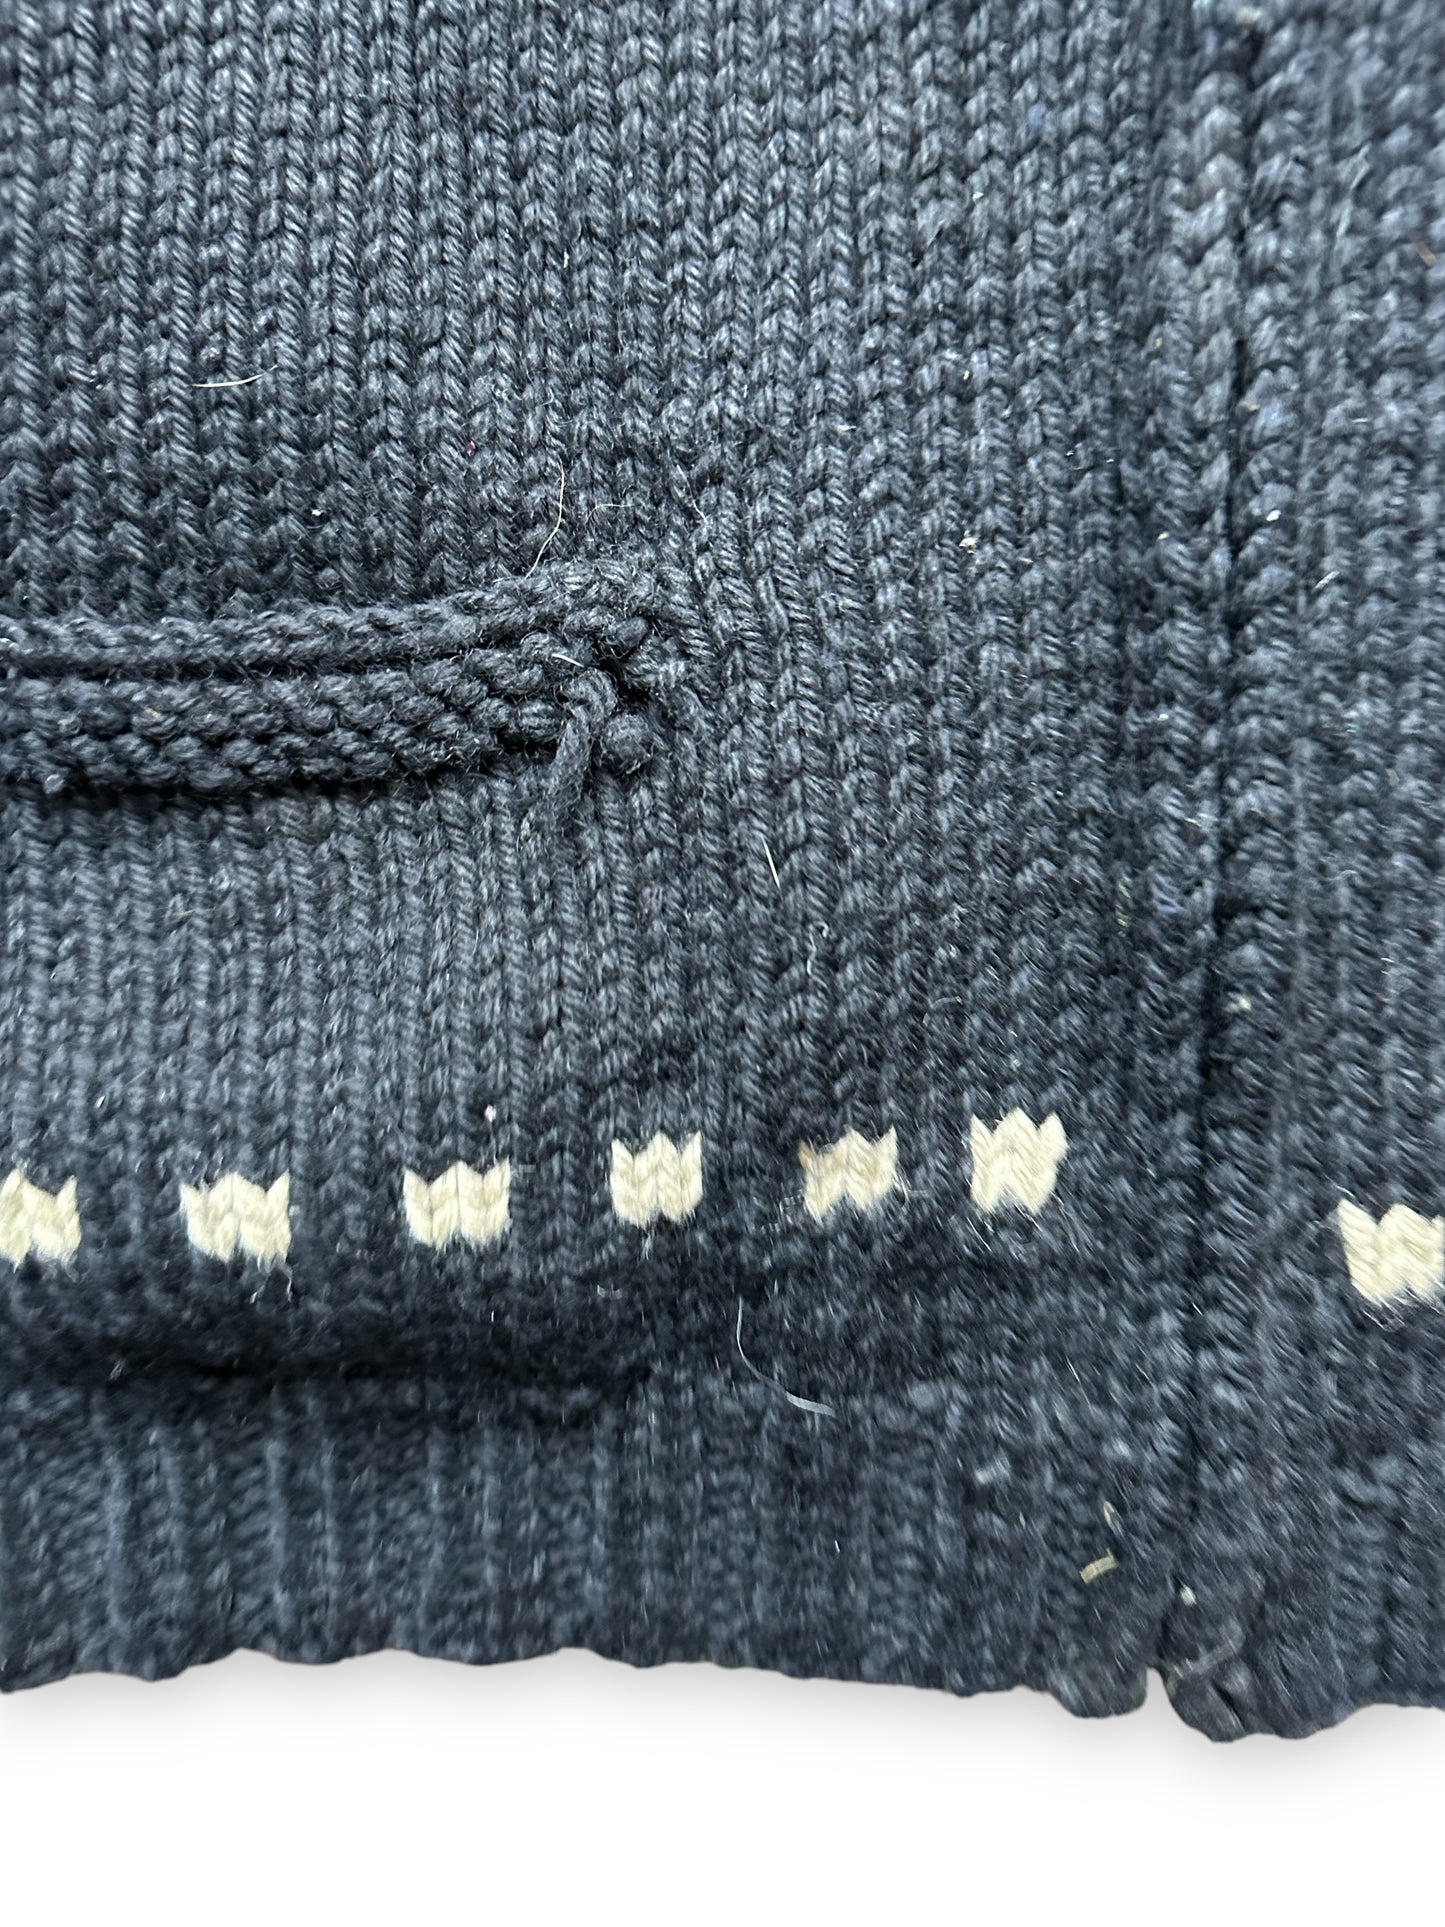 Snag on Pocket of Vintage Trucker Wool Cowichan SZ XL |  Vintage Cowichan Sweaters Seattle | Barn Owl Vintage Seattle